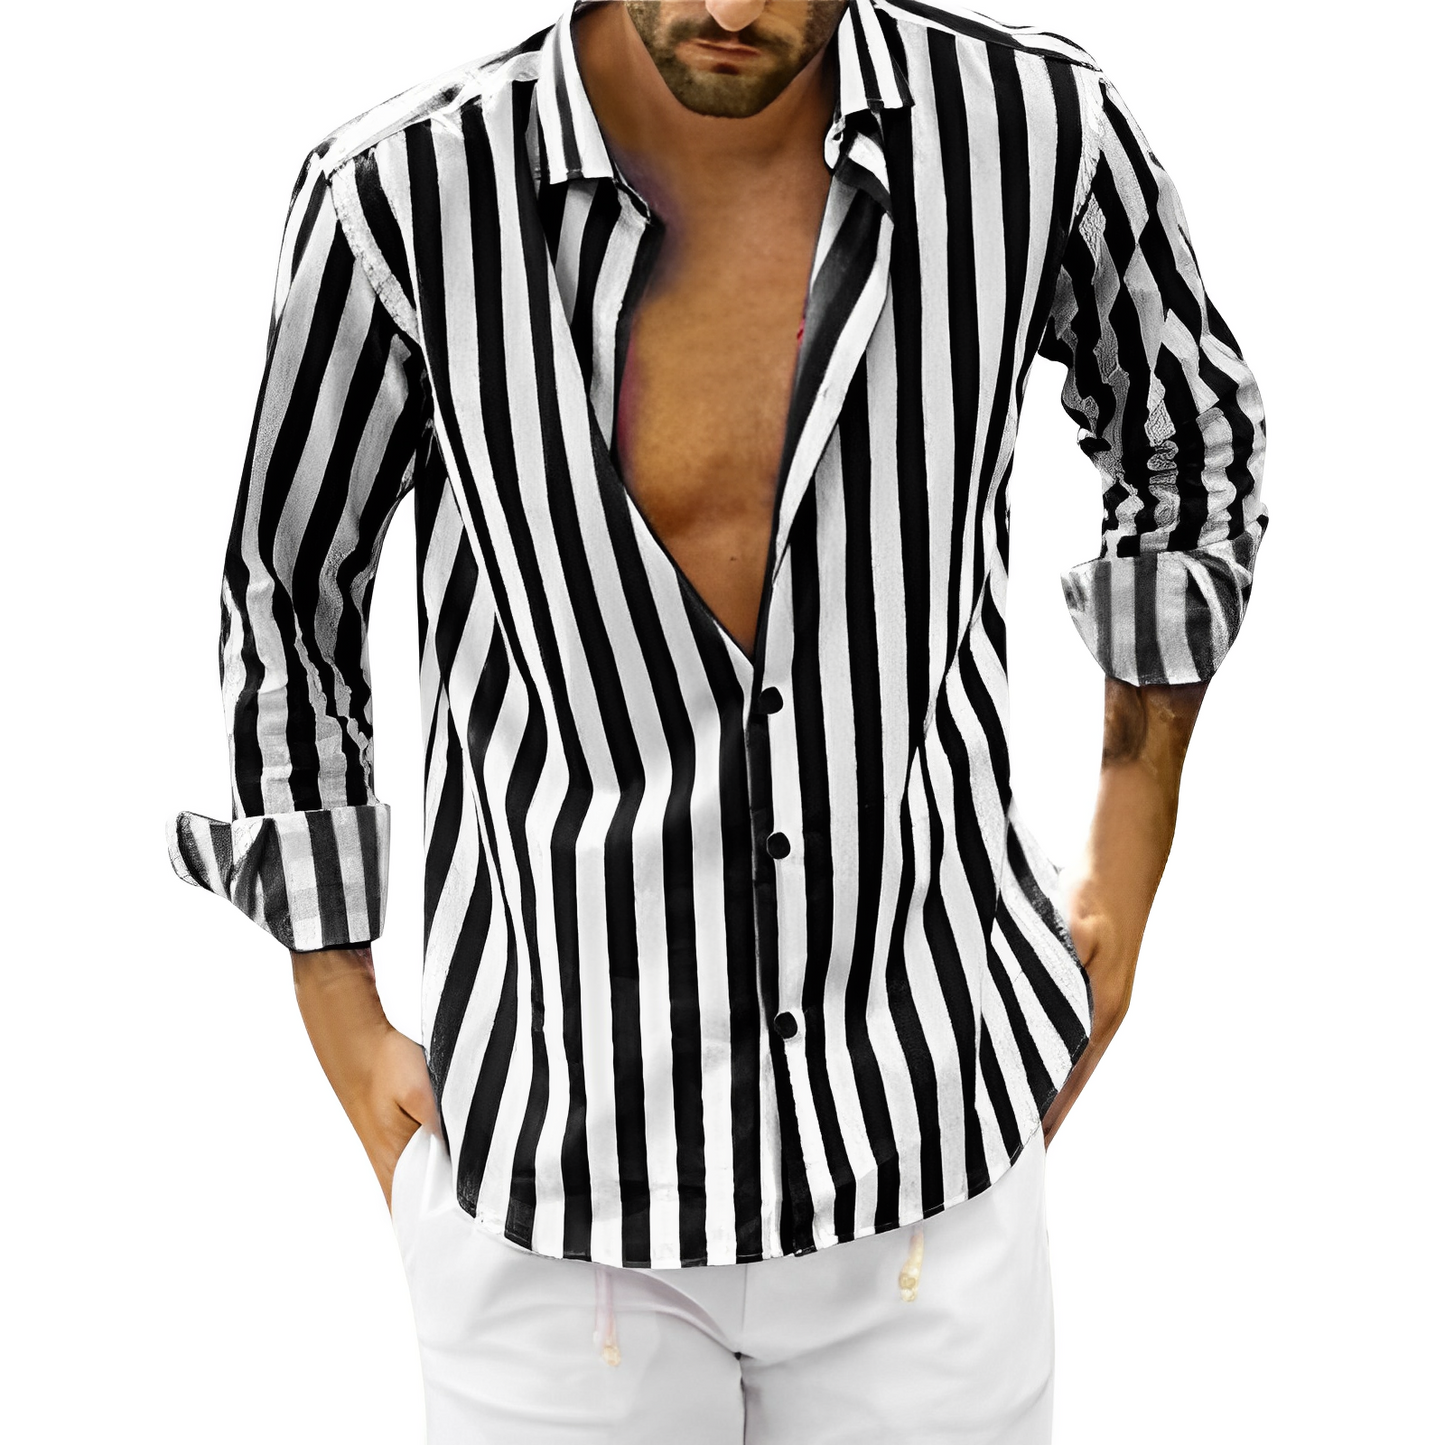 Matteo™ | Long-sleeved shirt for men